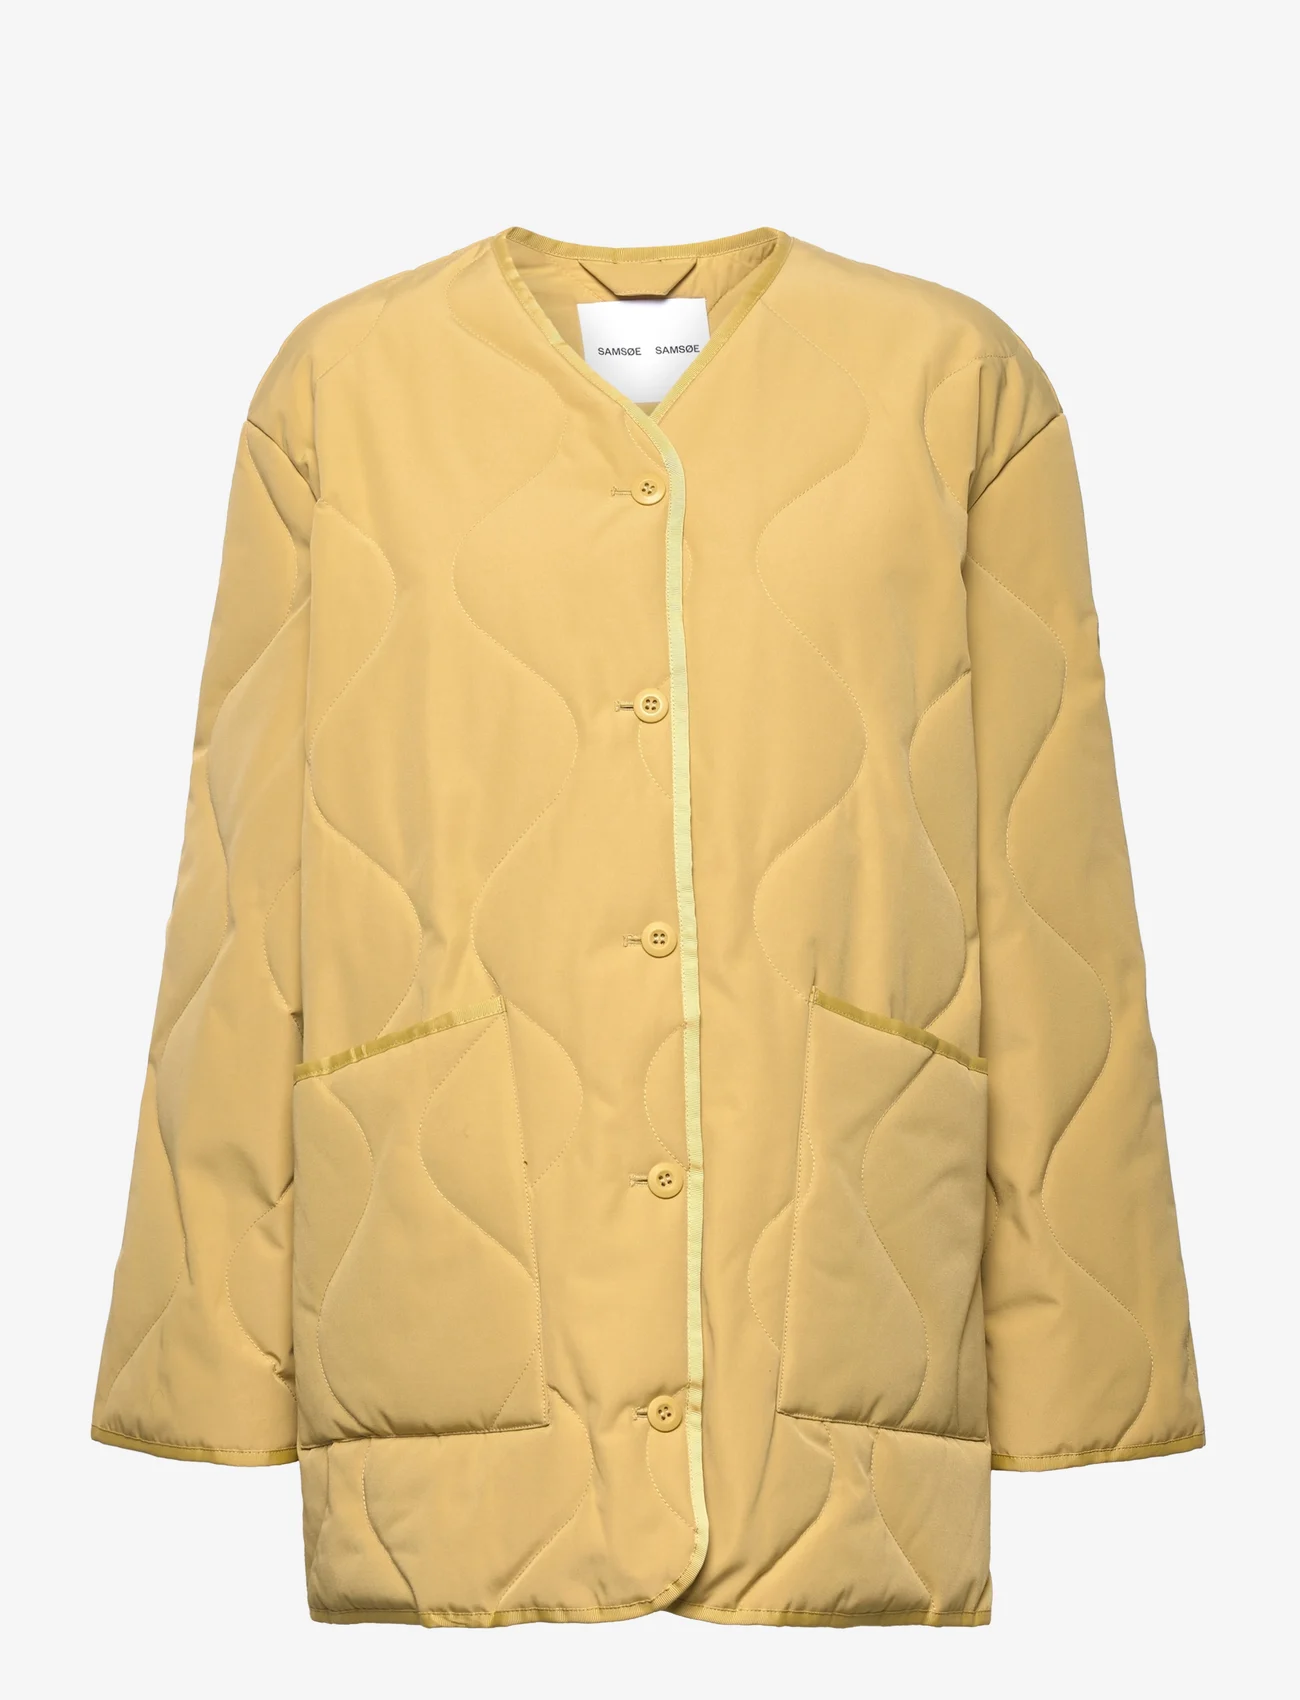 Samsøe Samsøe - Amazony jacket 14414 - wiosenne kurtki - antique gold - 0